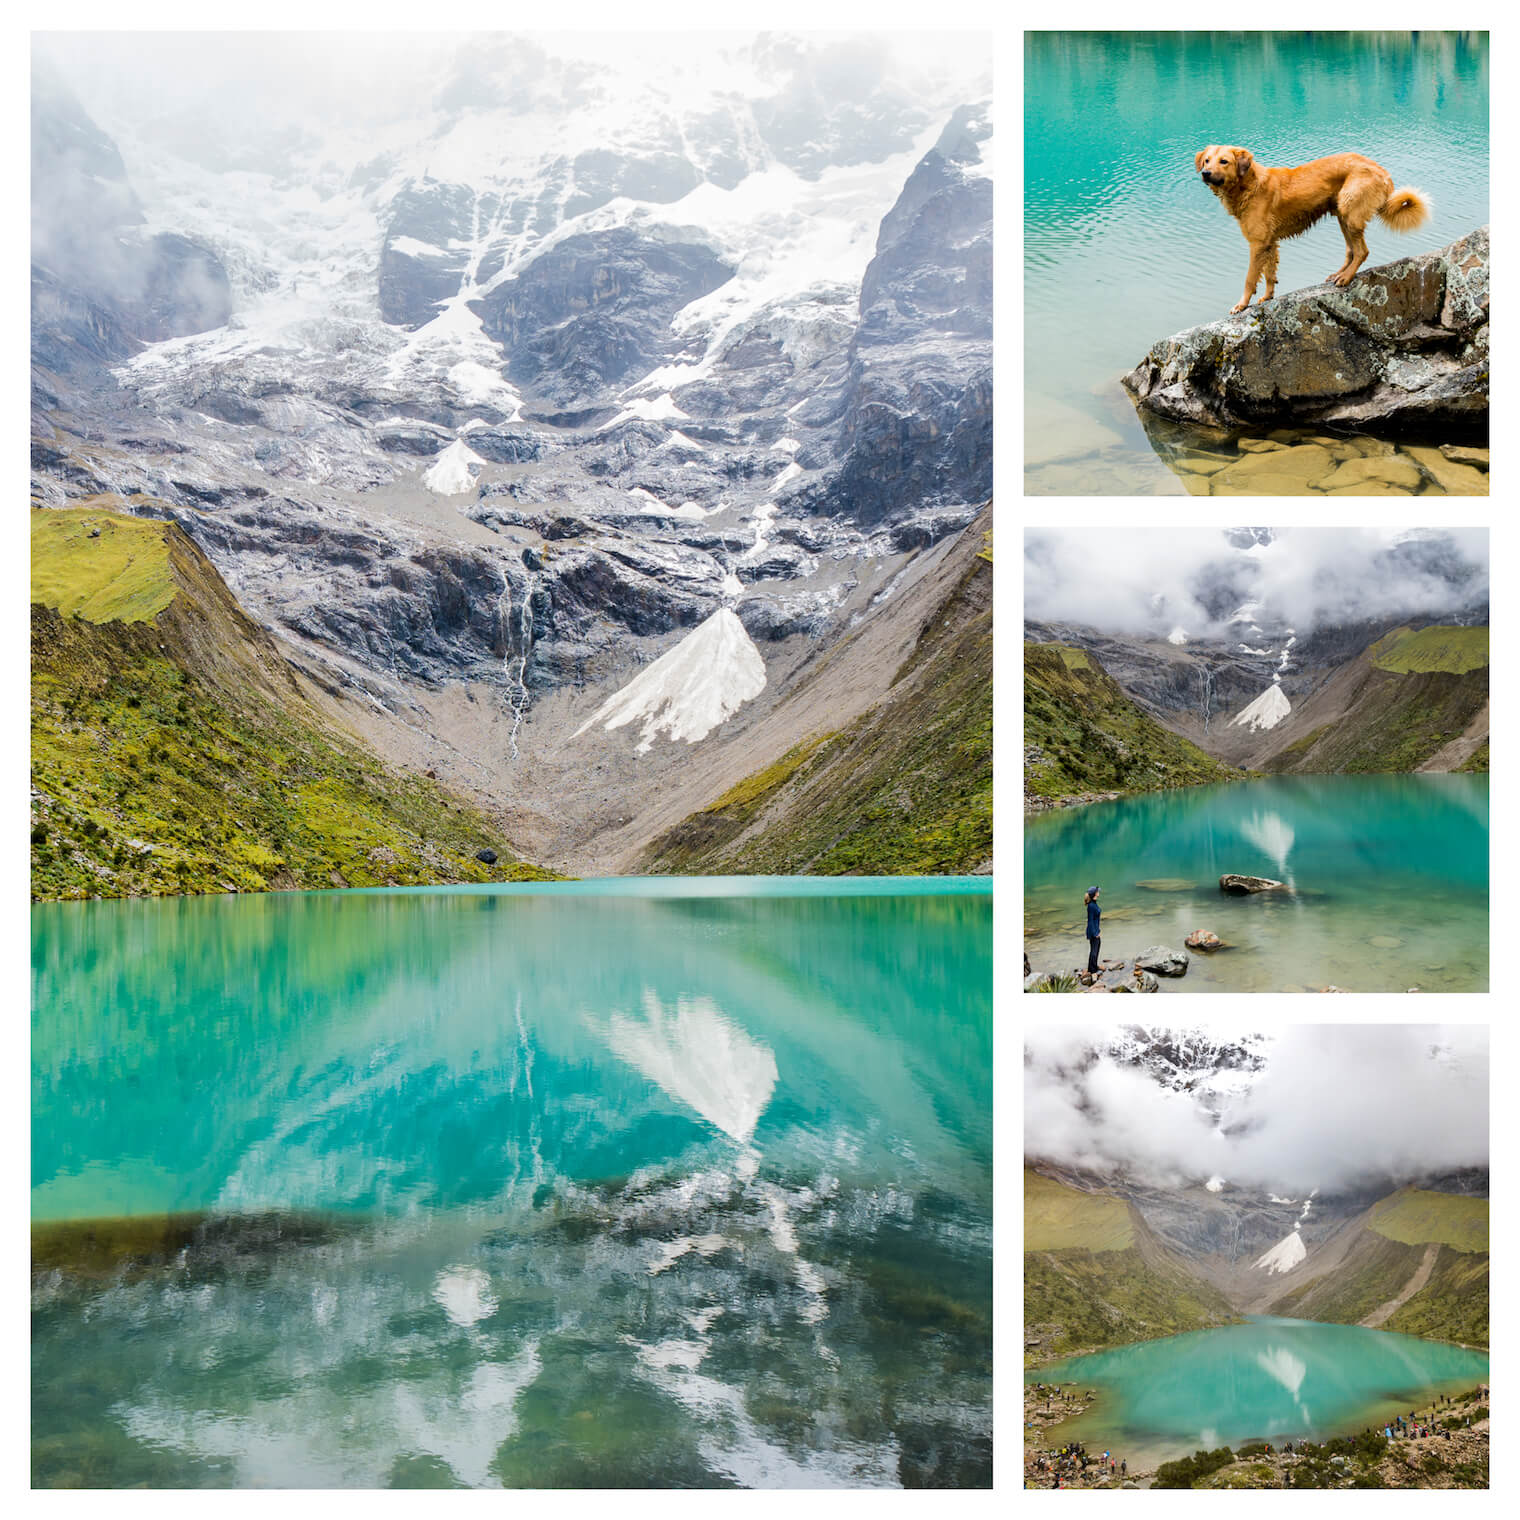 4 fotos: em destaque a esquerda: a foto de um lago verde e azul turquesa com bastante reflexo e montanhas nevadas atras. Superior direita: um cachorro aproveitando o lago. Meio direita: uma garota em pé perto do lago observando ele. Inferior direita: vista do lago atraves de um drone.